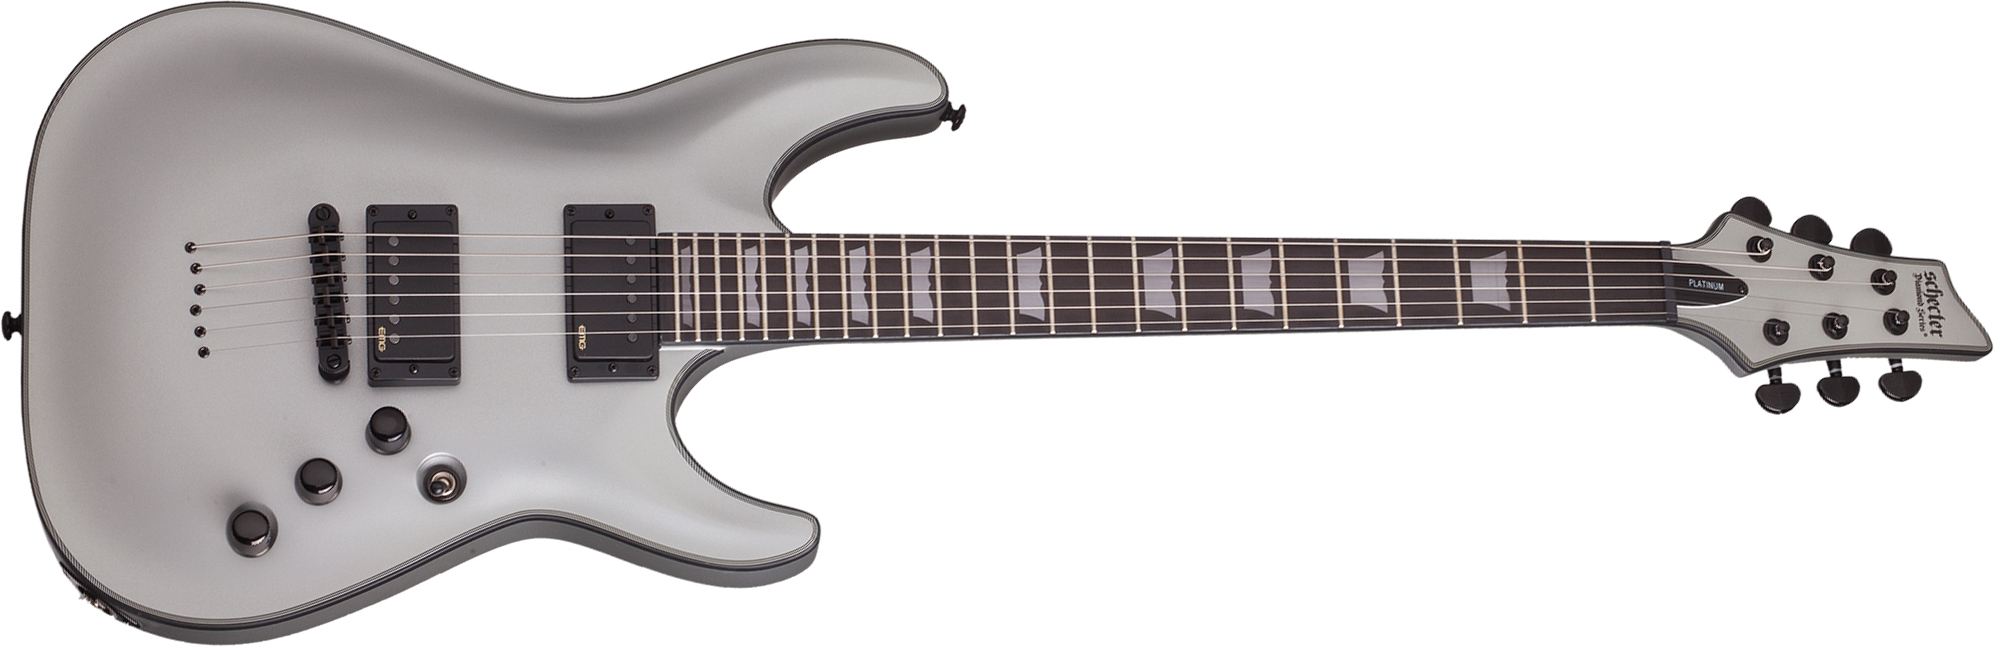 Schecter C-1 Platinum Hh Emg Ht Eb - Satin Silver - E-Gitarre in Str-Form - Main picture